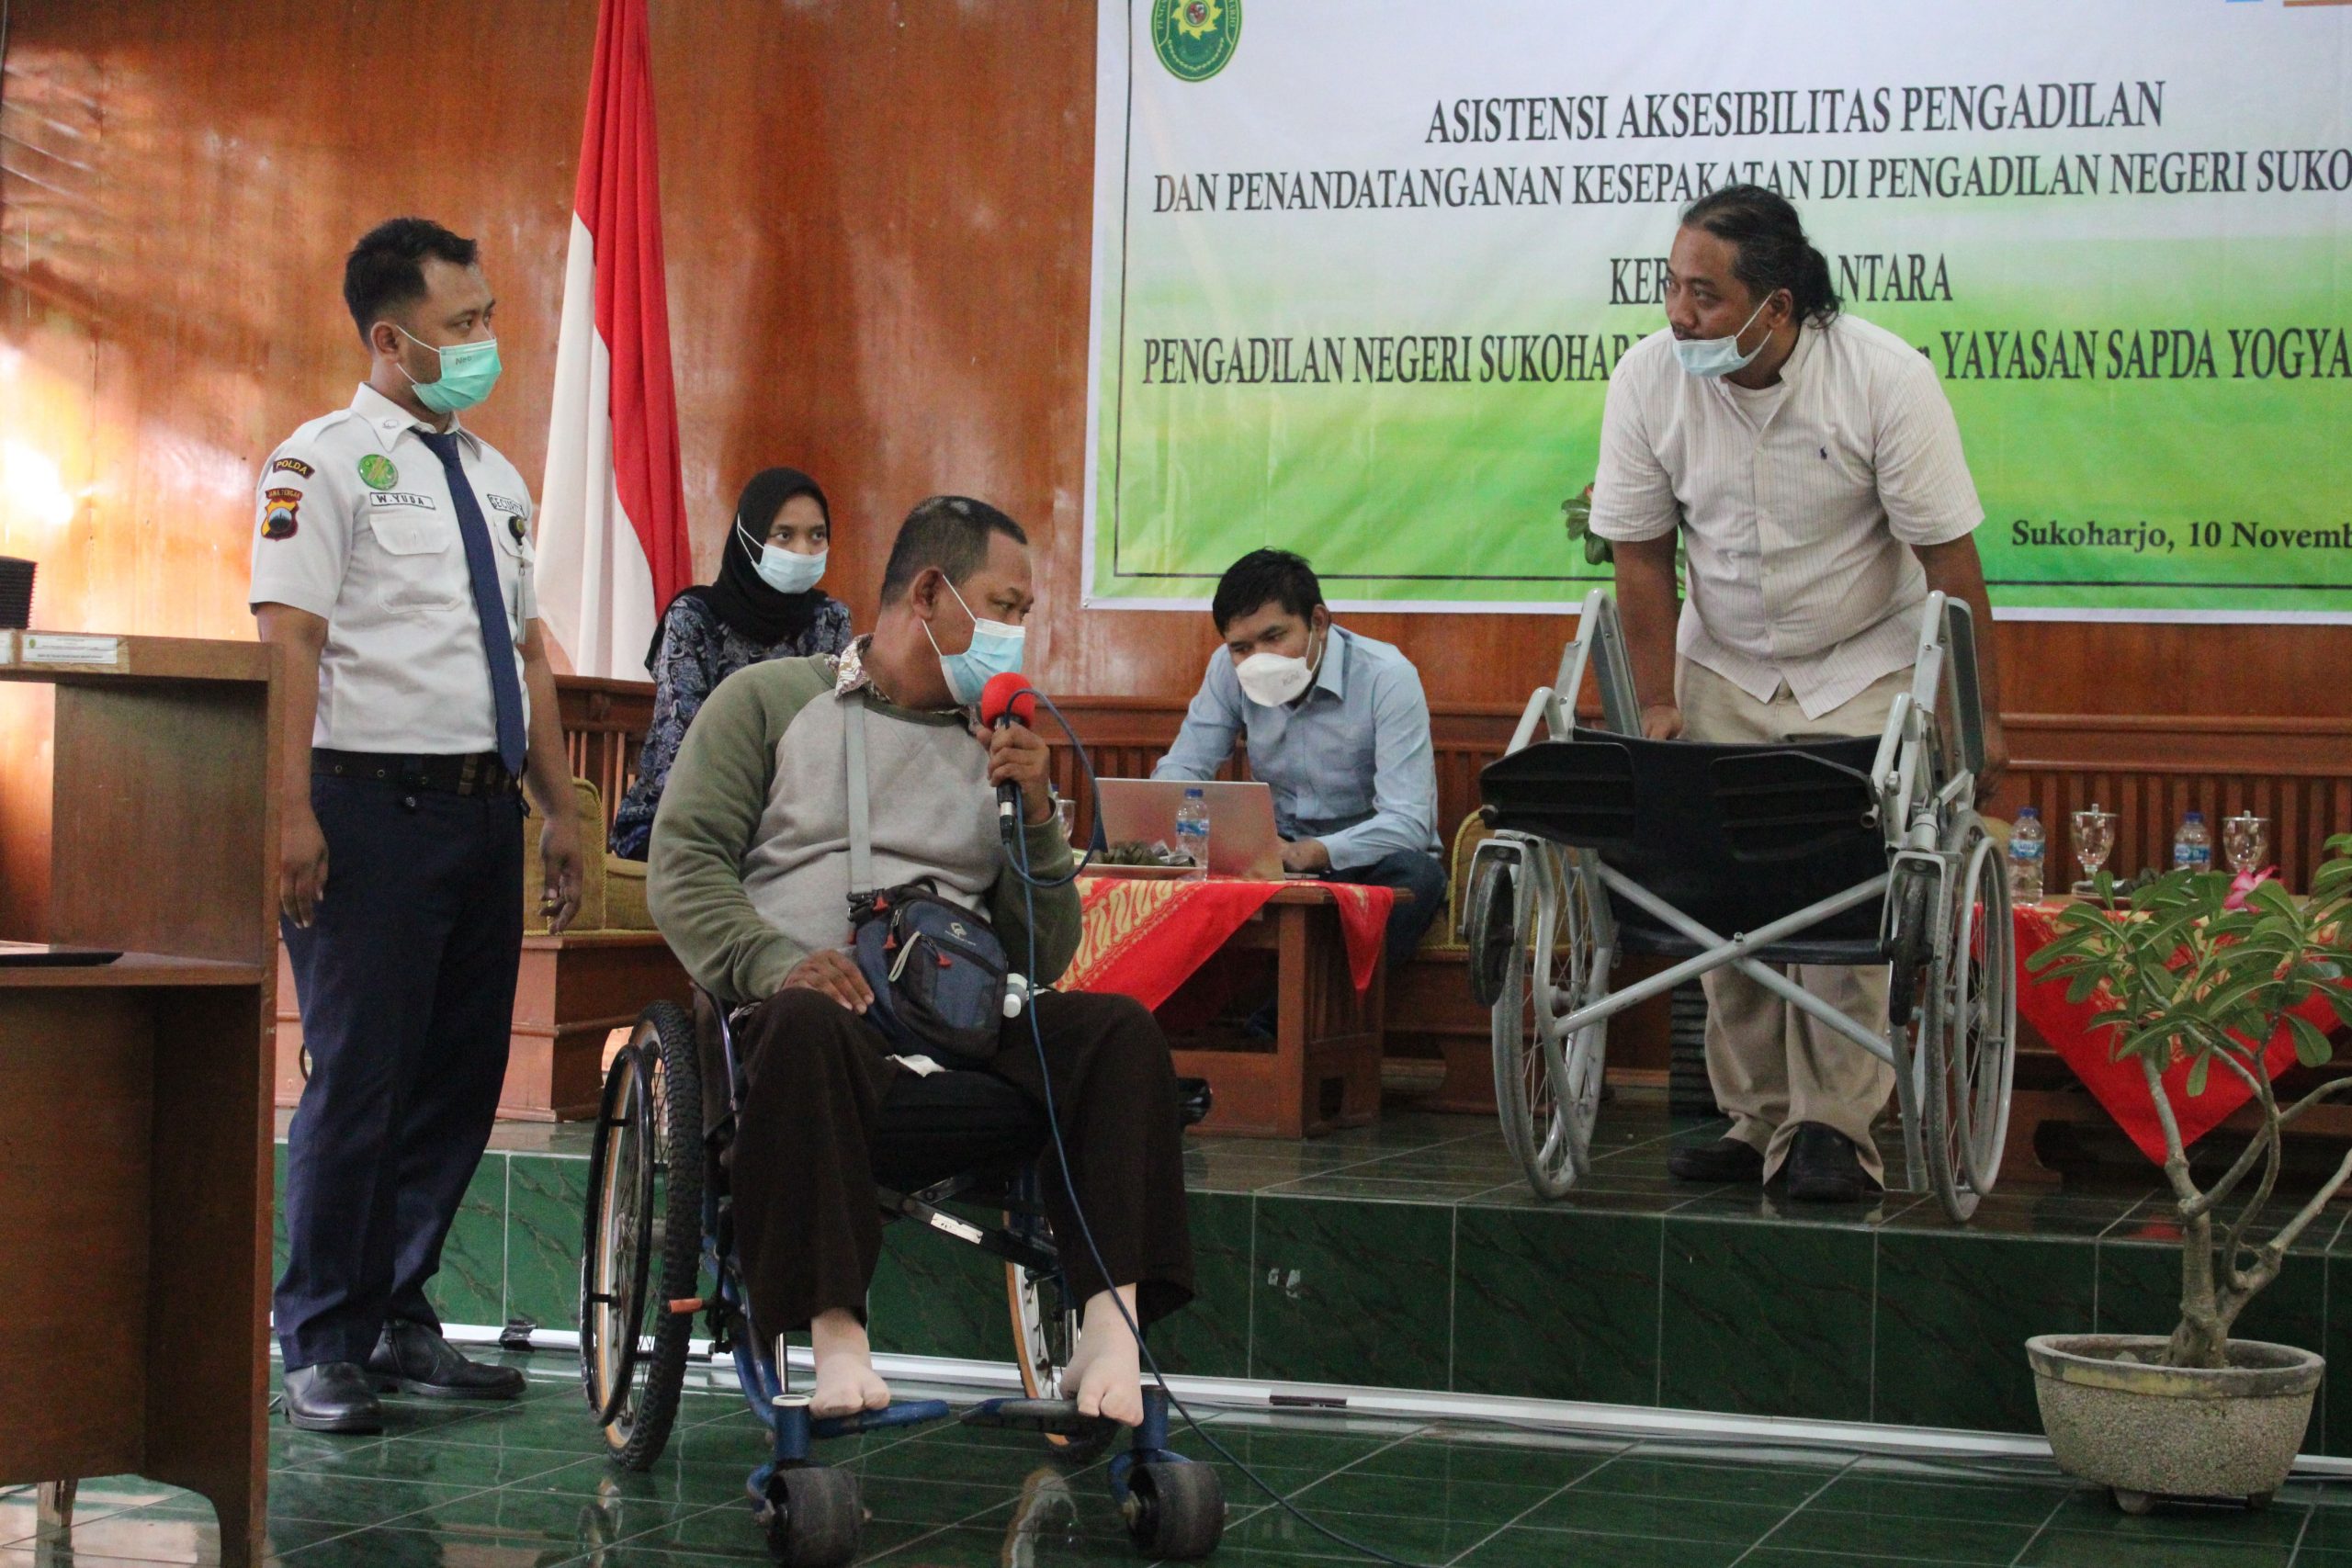 Tim SAPDA sedang memperagakan etika mendorong kursi roda yang tepat.